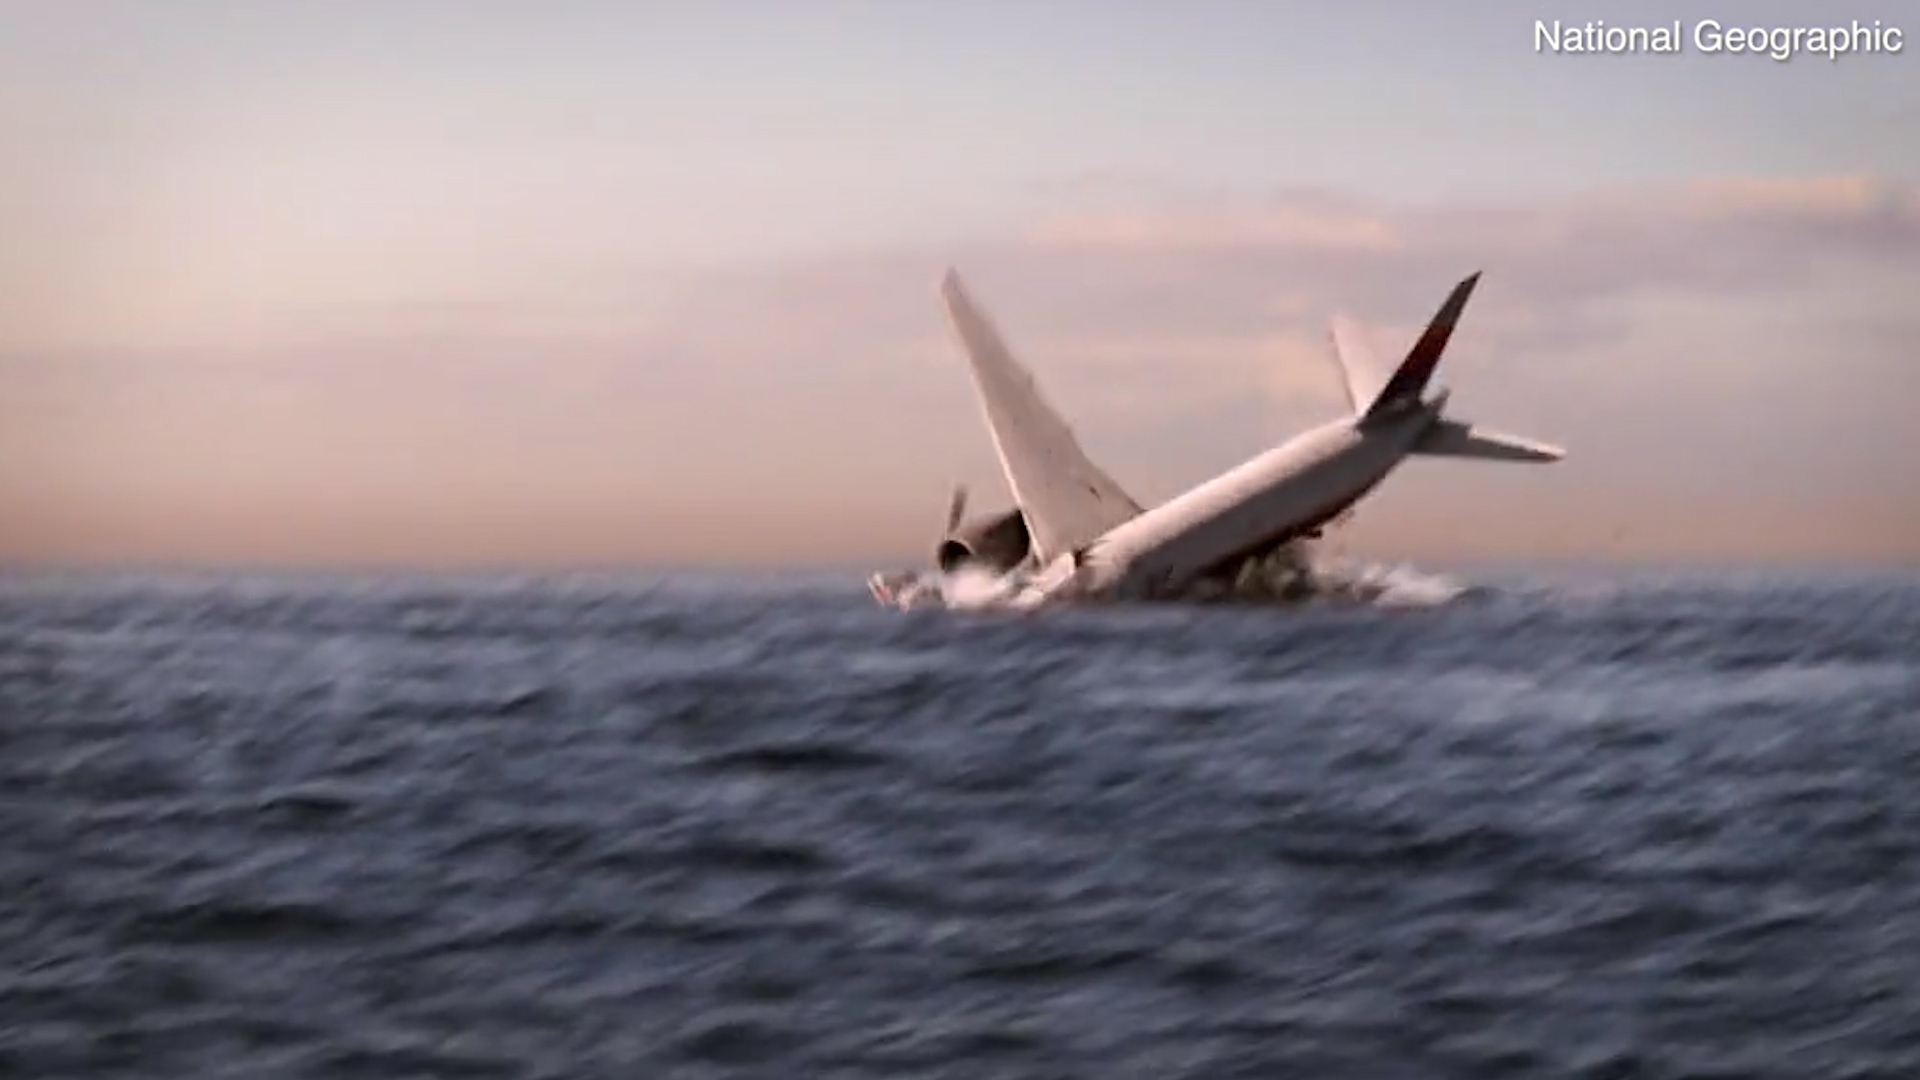 En un intento por recrear los momentos finales del Boeing 777, el programa de National Geographic "Drain The Oceans" realizó un documental sobre este hecho que conmocionó al mundo y que hasta el día de hoy no tiene una explicación